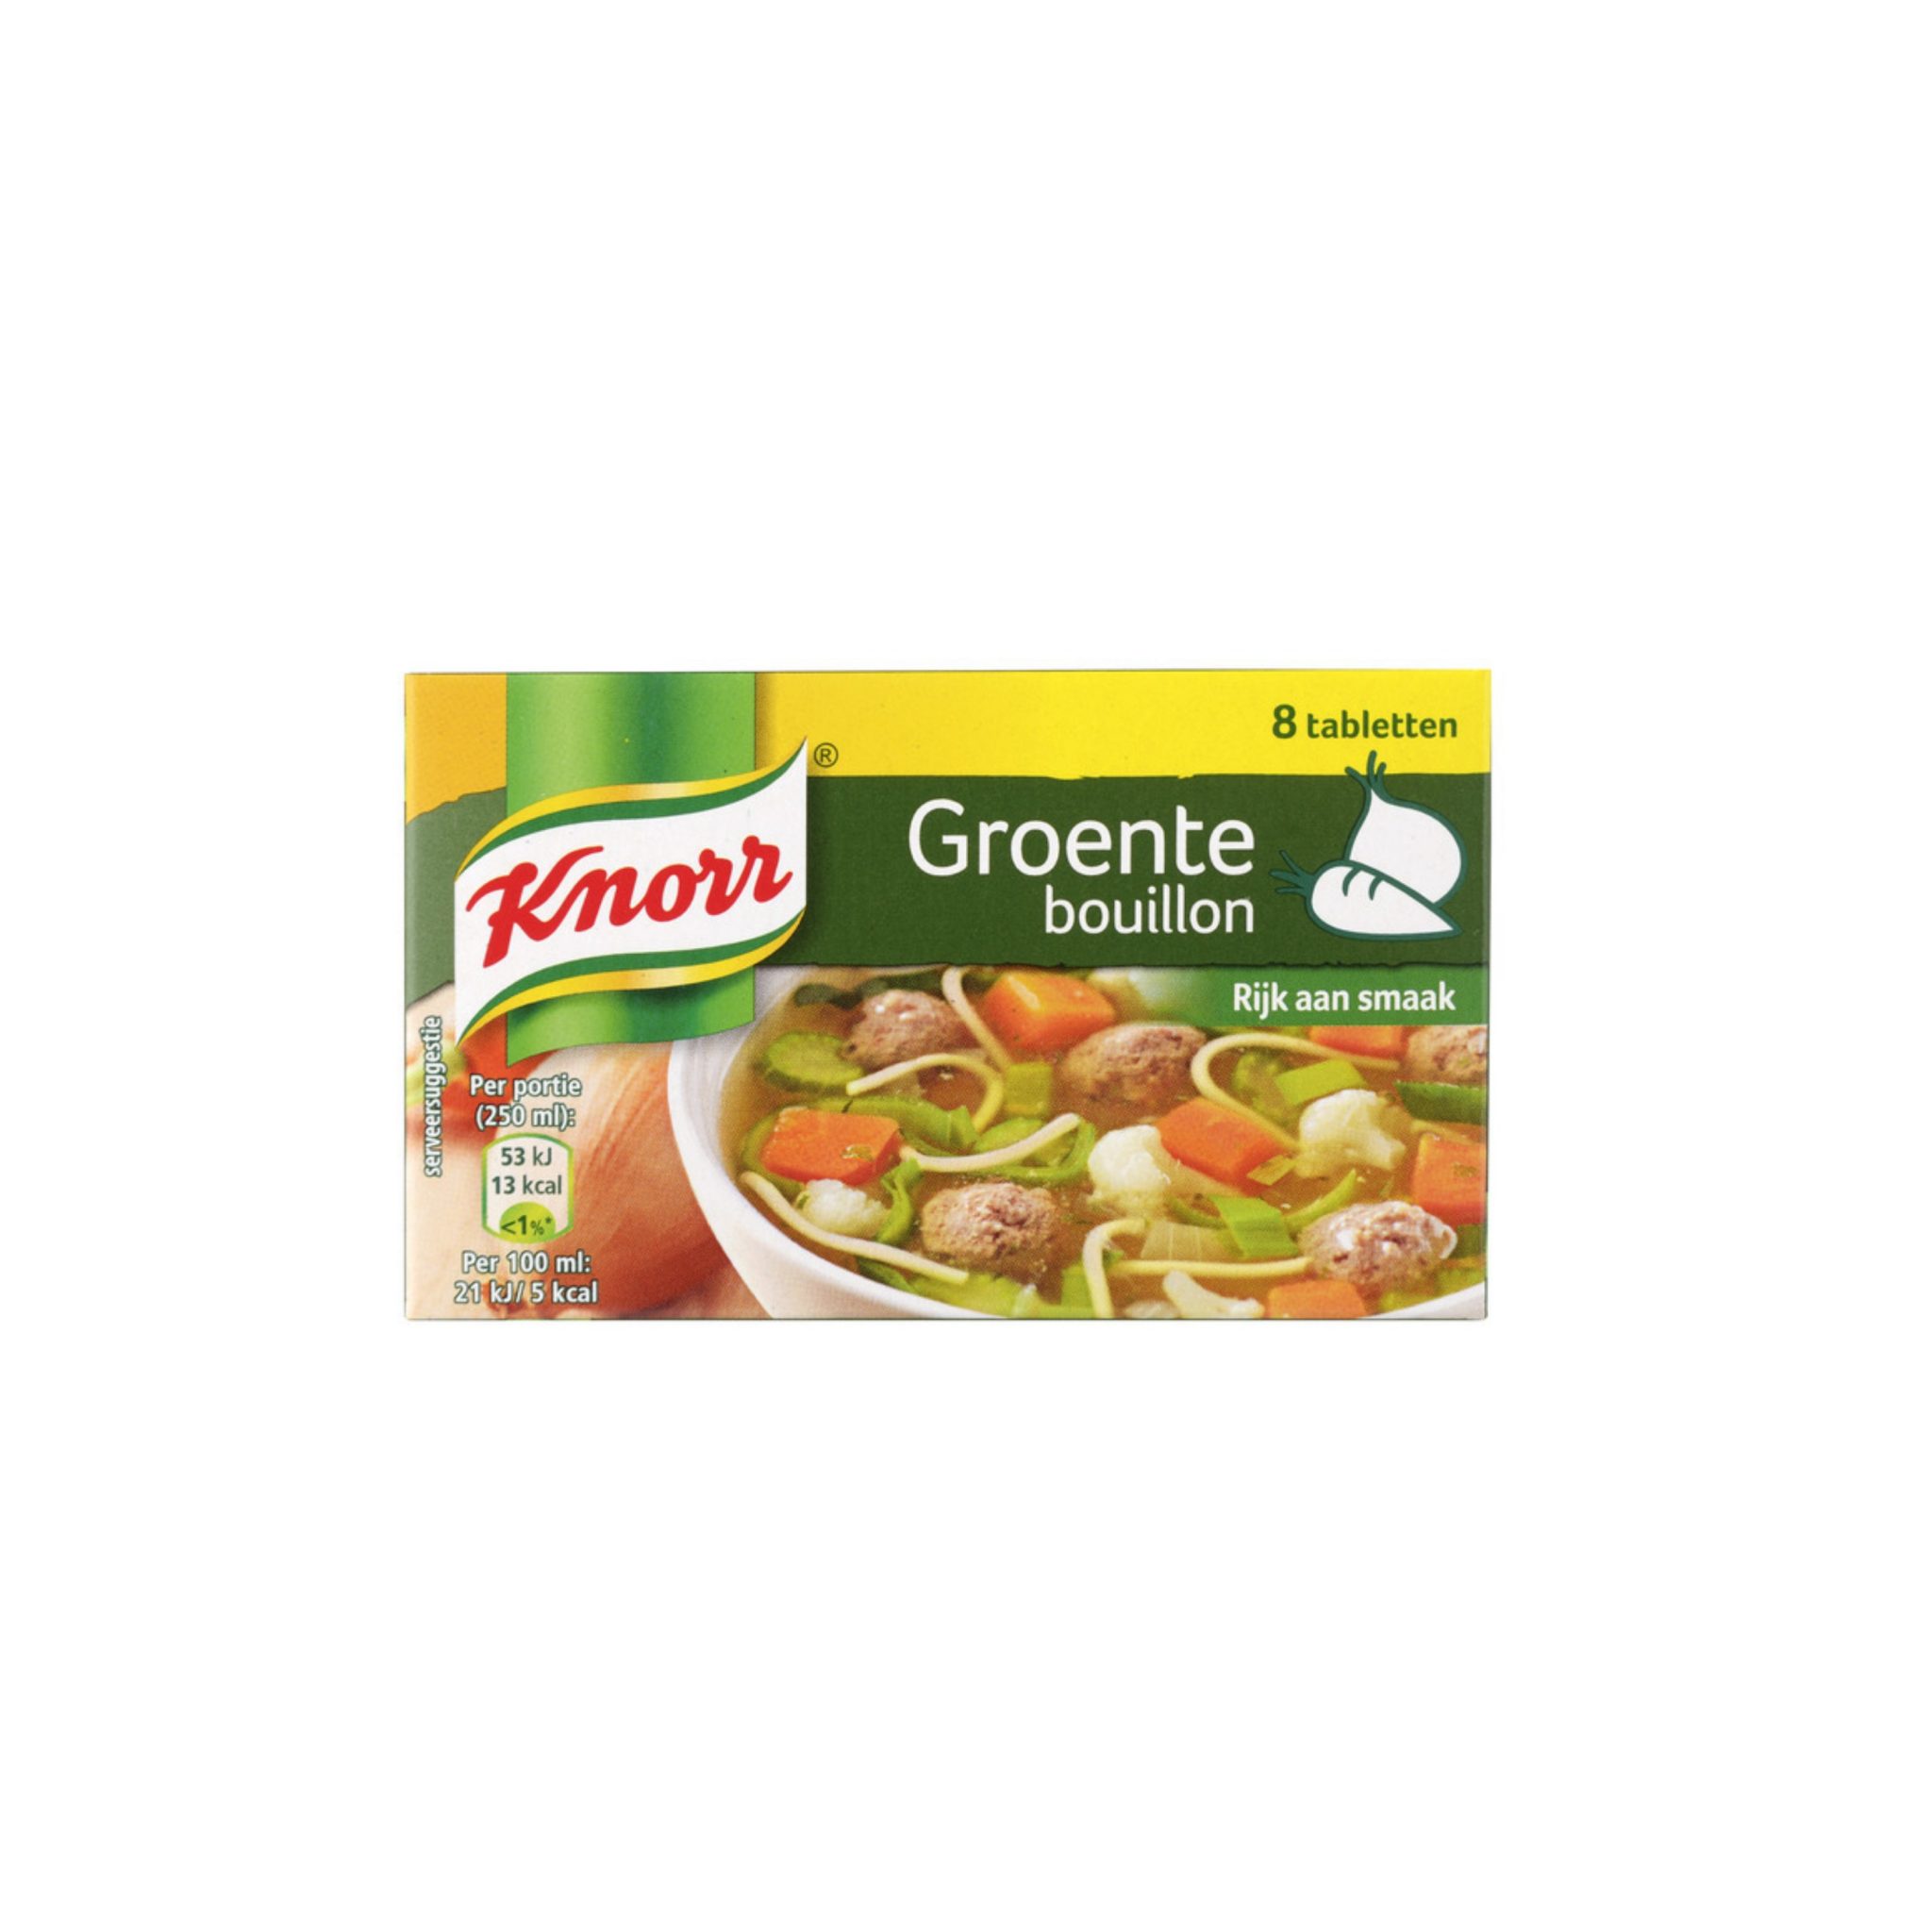 Knorr. Online levensmiddelen Nubox.nl levert in Suriname